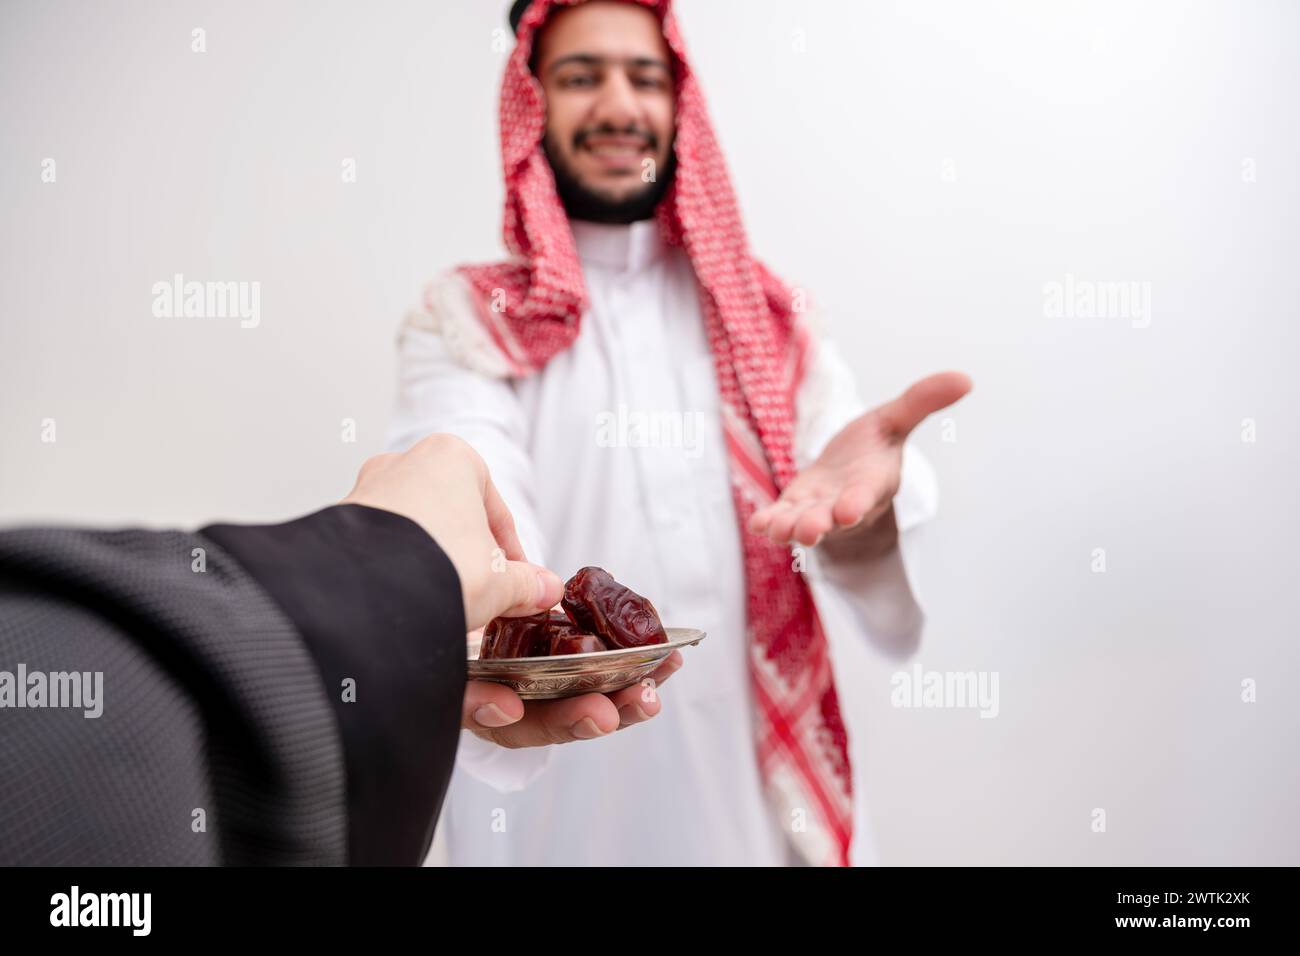 arabic man holding dates represents hospitality and generosity wearing kandura with keffiyeh on isolated white background for eid celebrations Stock Photo